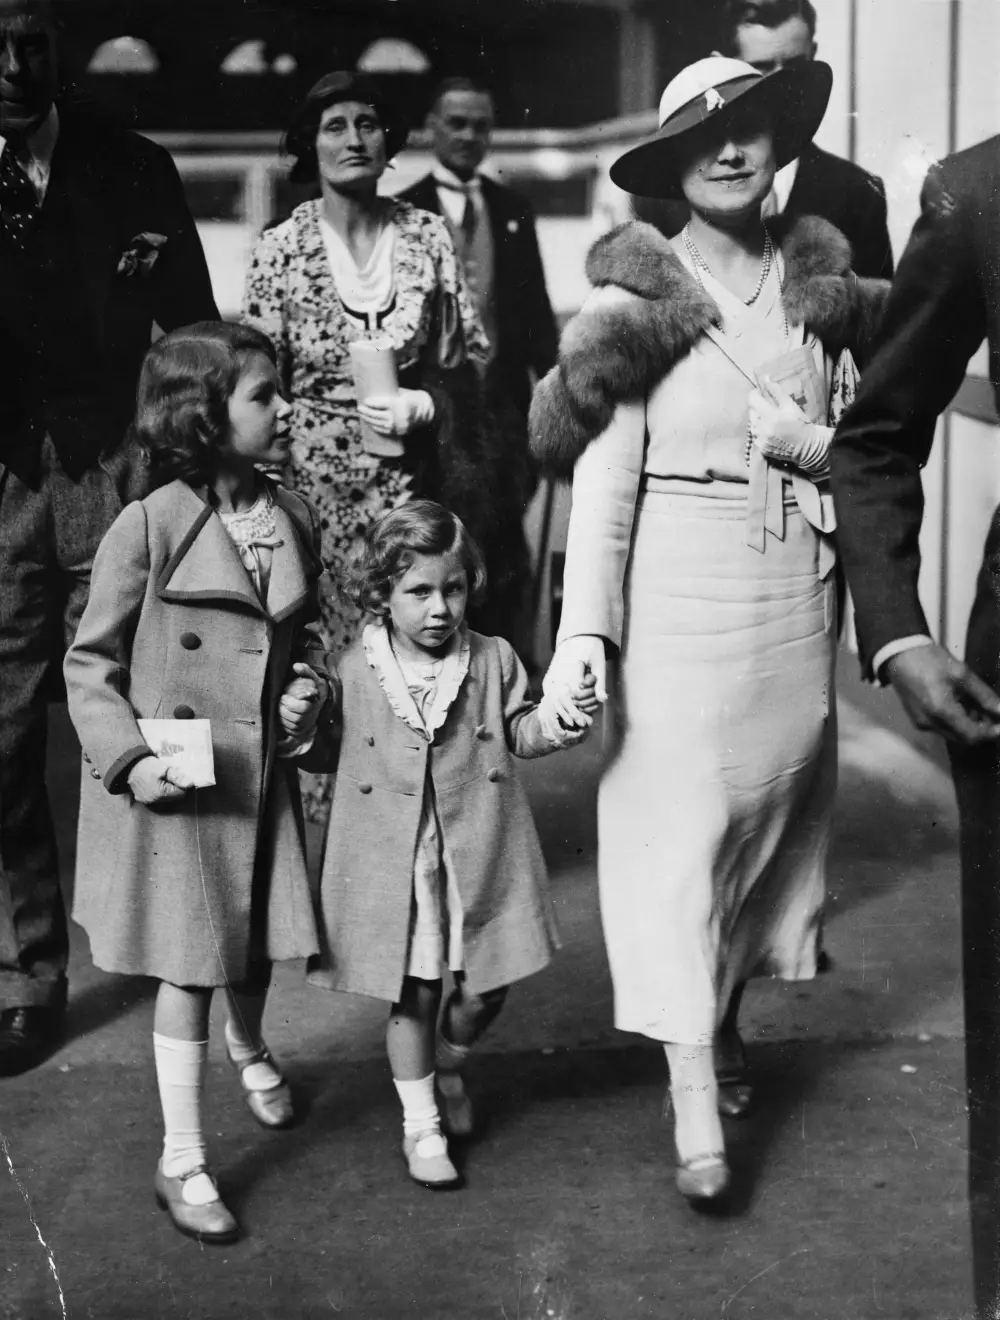 พ.ศ. 2477/ค.ศ. 1934:  “เจ้าหญิงเอลิซาเบธ”, “เจ้าหญิงมาร์กาเร็ต” และดัชเชสแห่งยอร์ก เสด็จเข้าชมงานแสดงม้านานาชาติที่โอลิมเปีย ณ กรุงลอนดอนของอังกฤษ